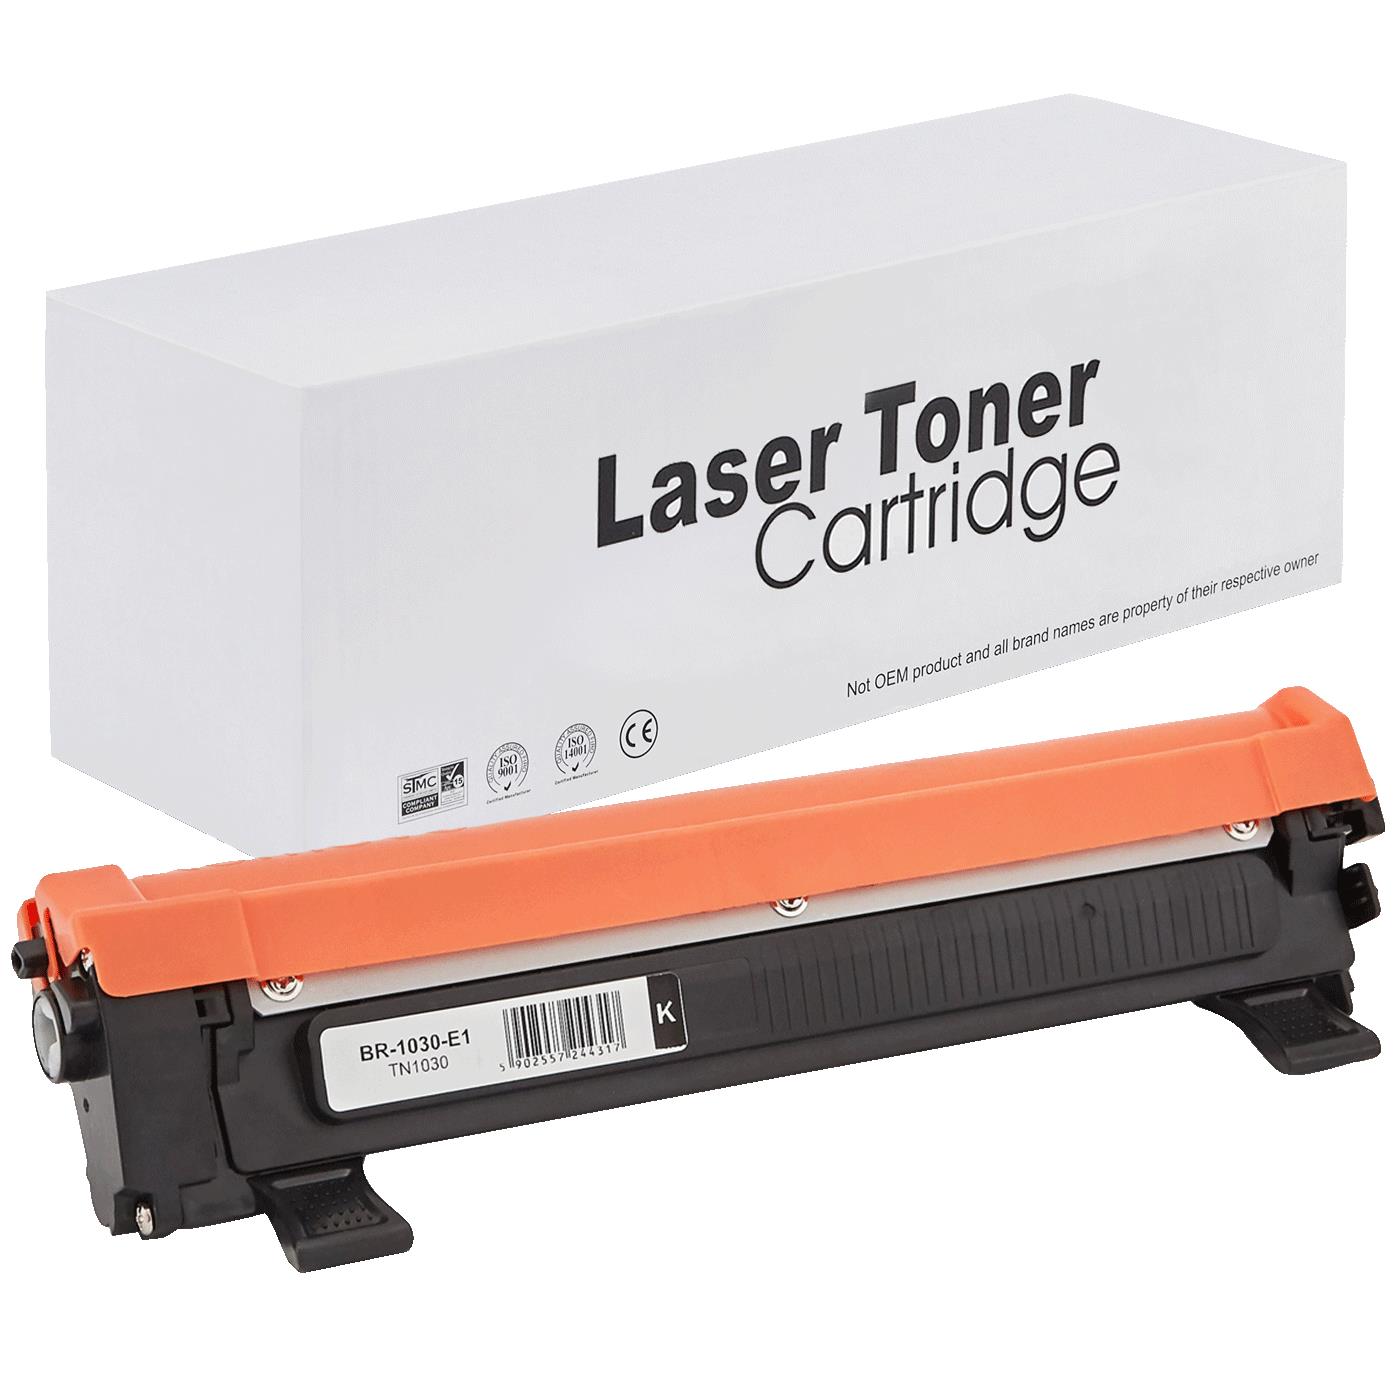 съвместима тонер касета за принтери и печатащи устройства на Brother 1110R Toner BR-1030 | TN1030 / TN1050 / TN-1030. Ниски цени, прецизно изпълнение, високо качество.